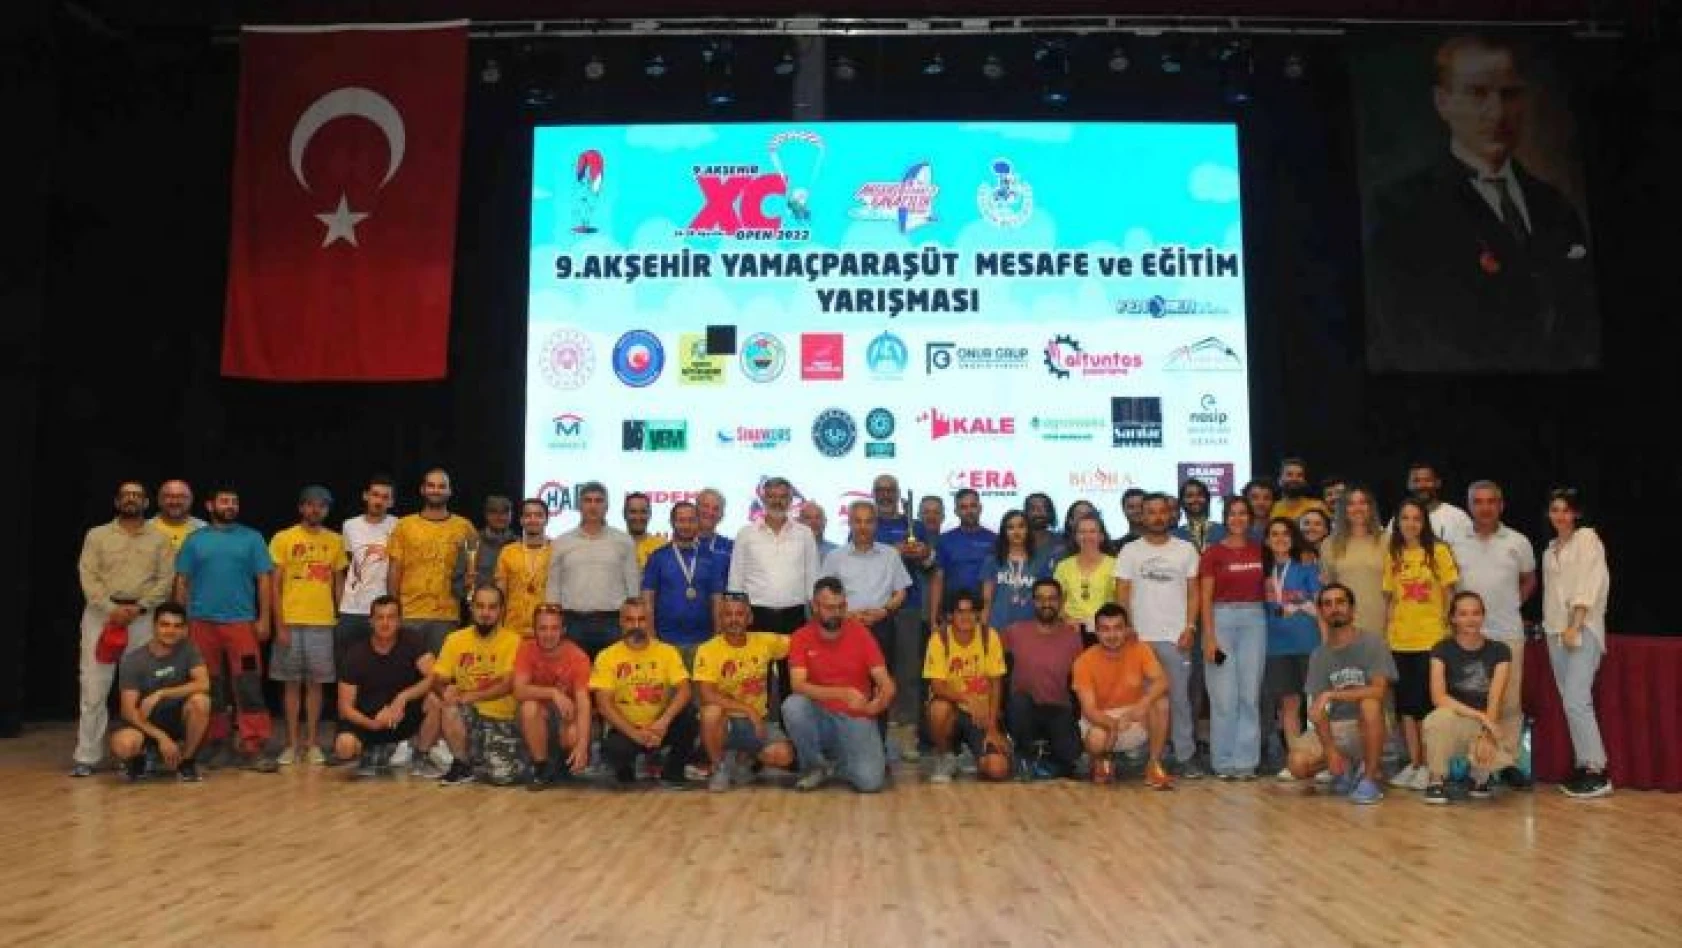 9. Akşehir XC Open 2022 Mesafe ve Eğitim Yarışması'nın ödülleri verildi